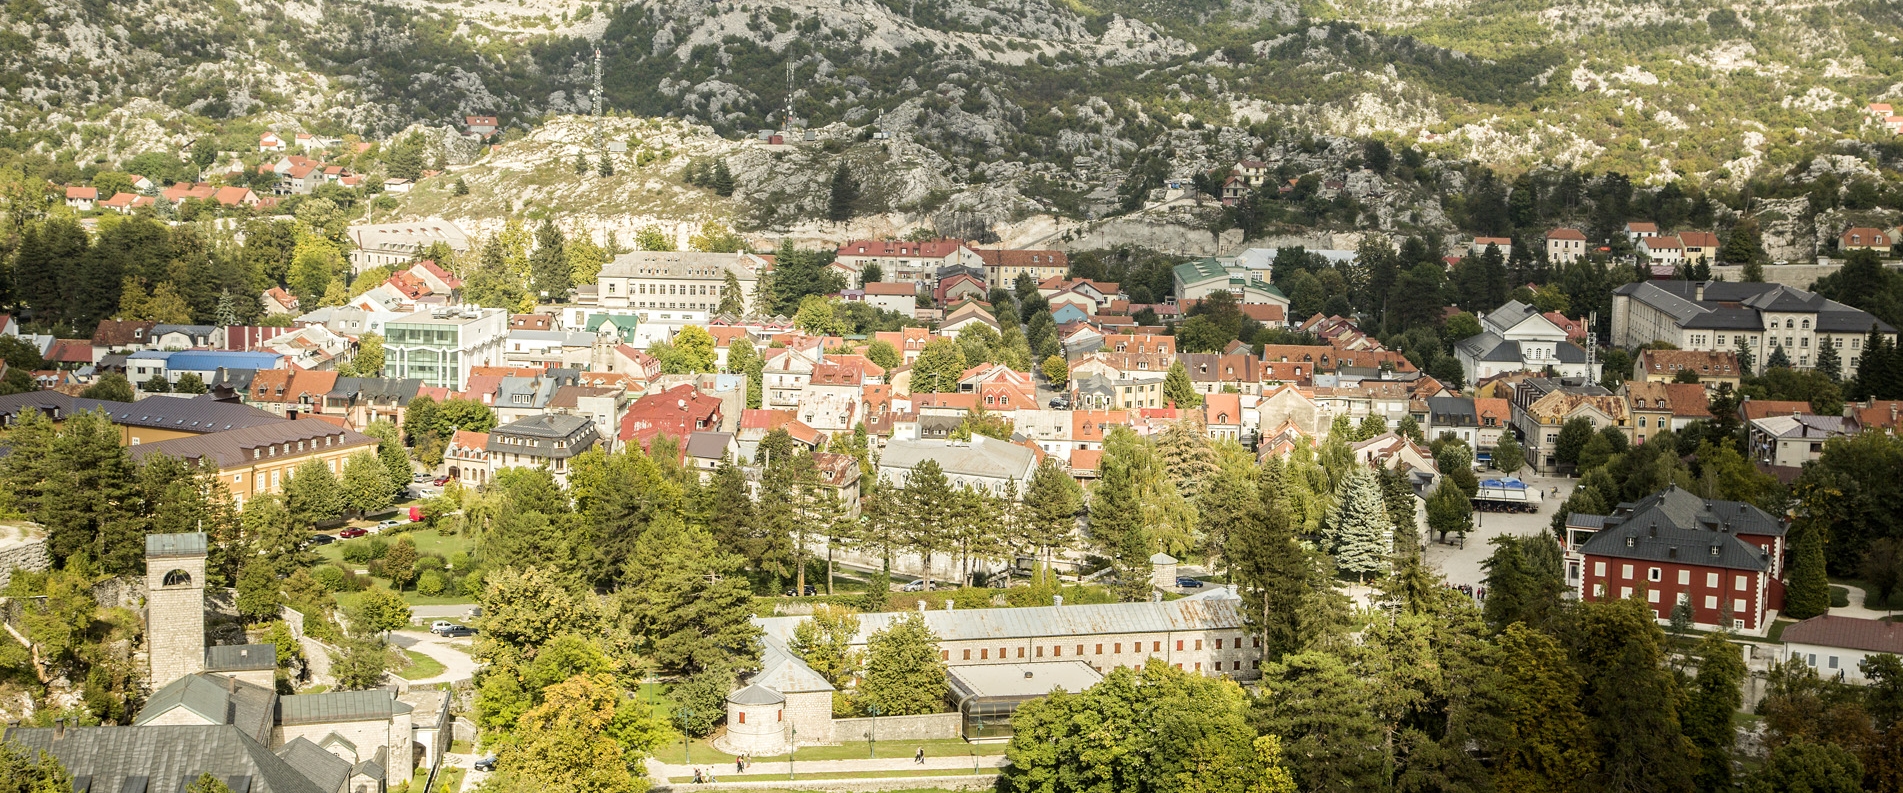 Цетине: культурная столица Черногории — город-музей